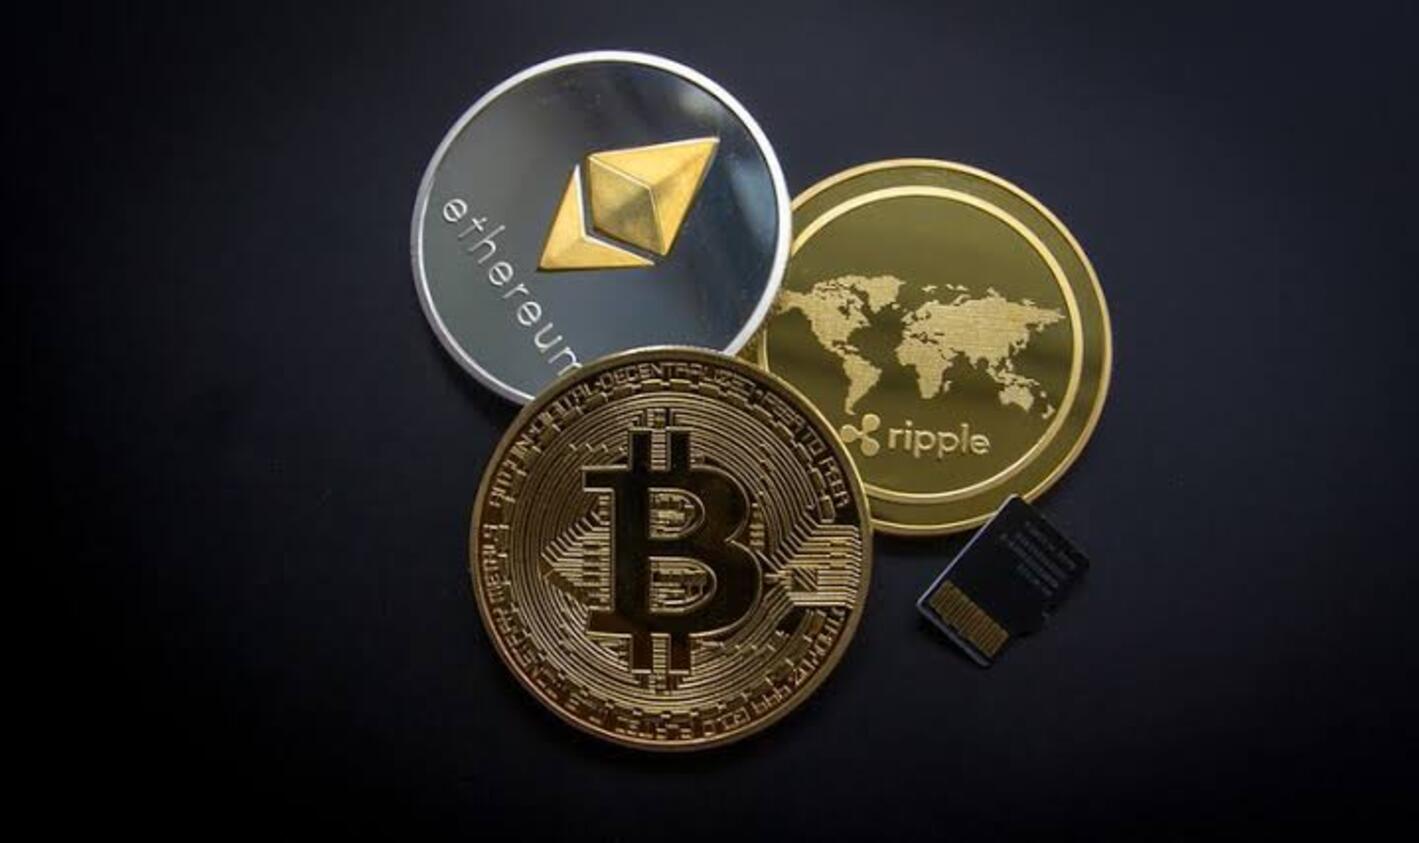 Robert T. Kiyosaki Optimis Harga Bitcoin Capai $150,000 Setelah Persetujuan ETF Spot Strategi Investasi di Tengah Ketidakpastian Ekonomi AS